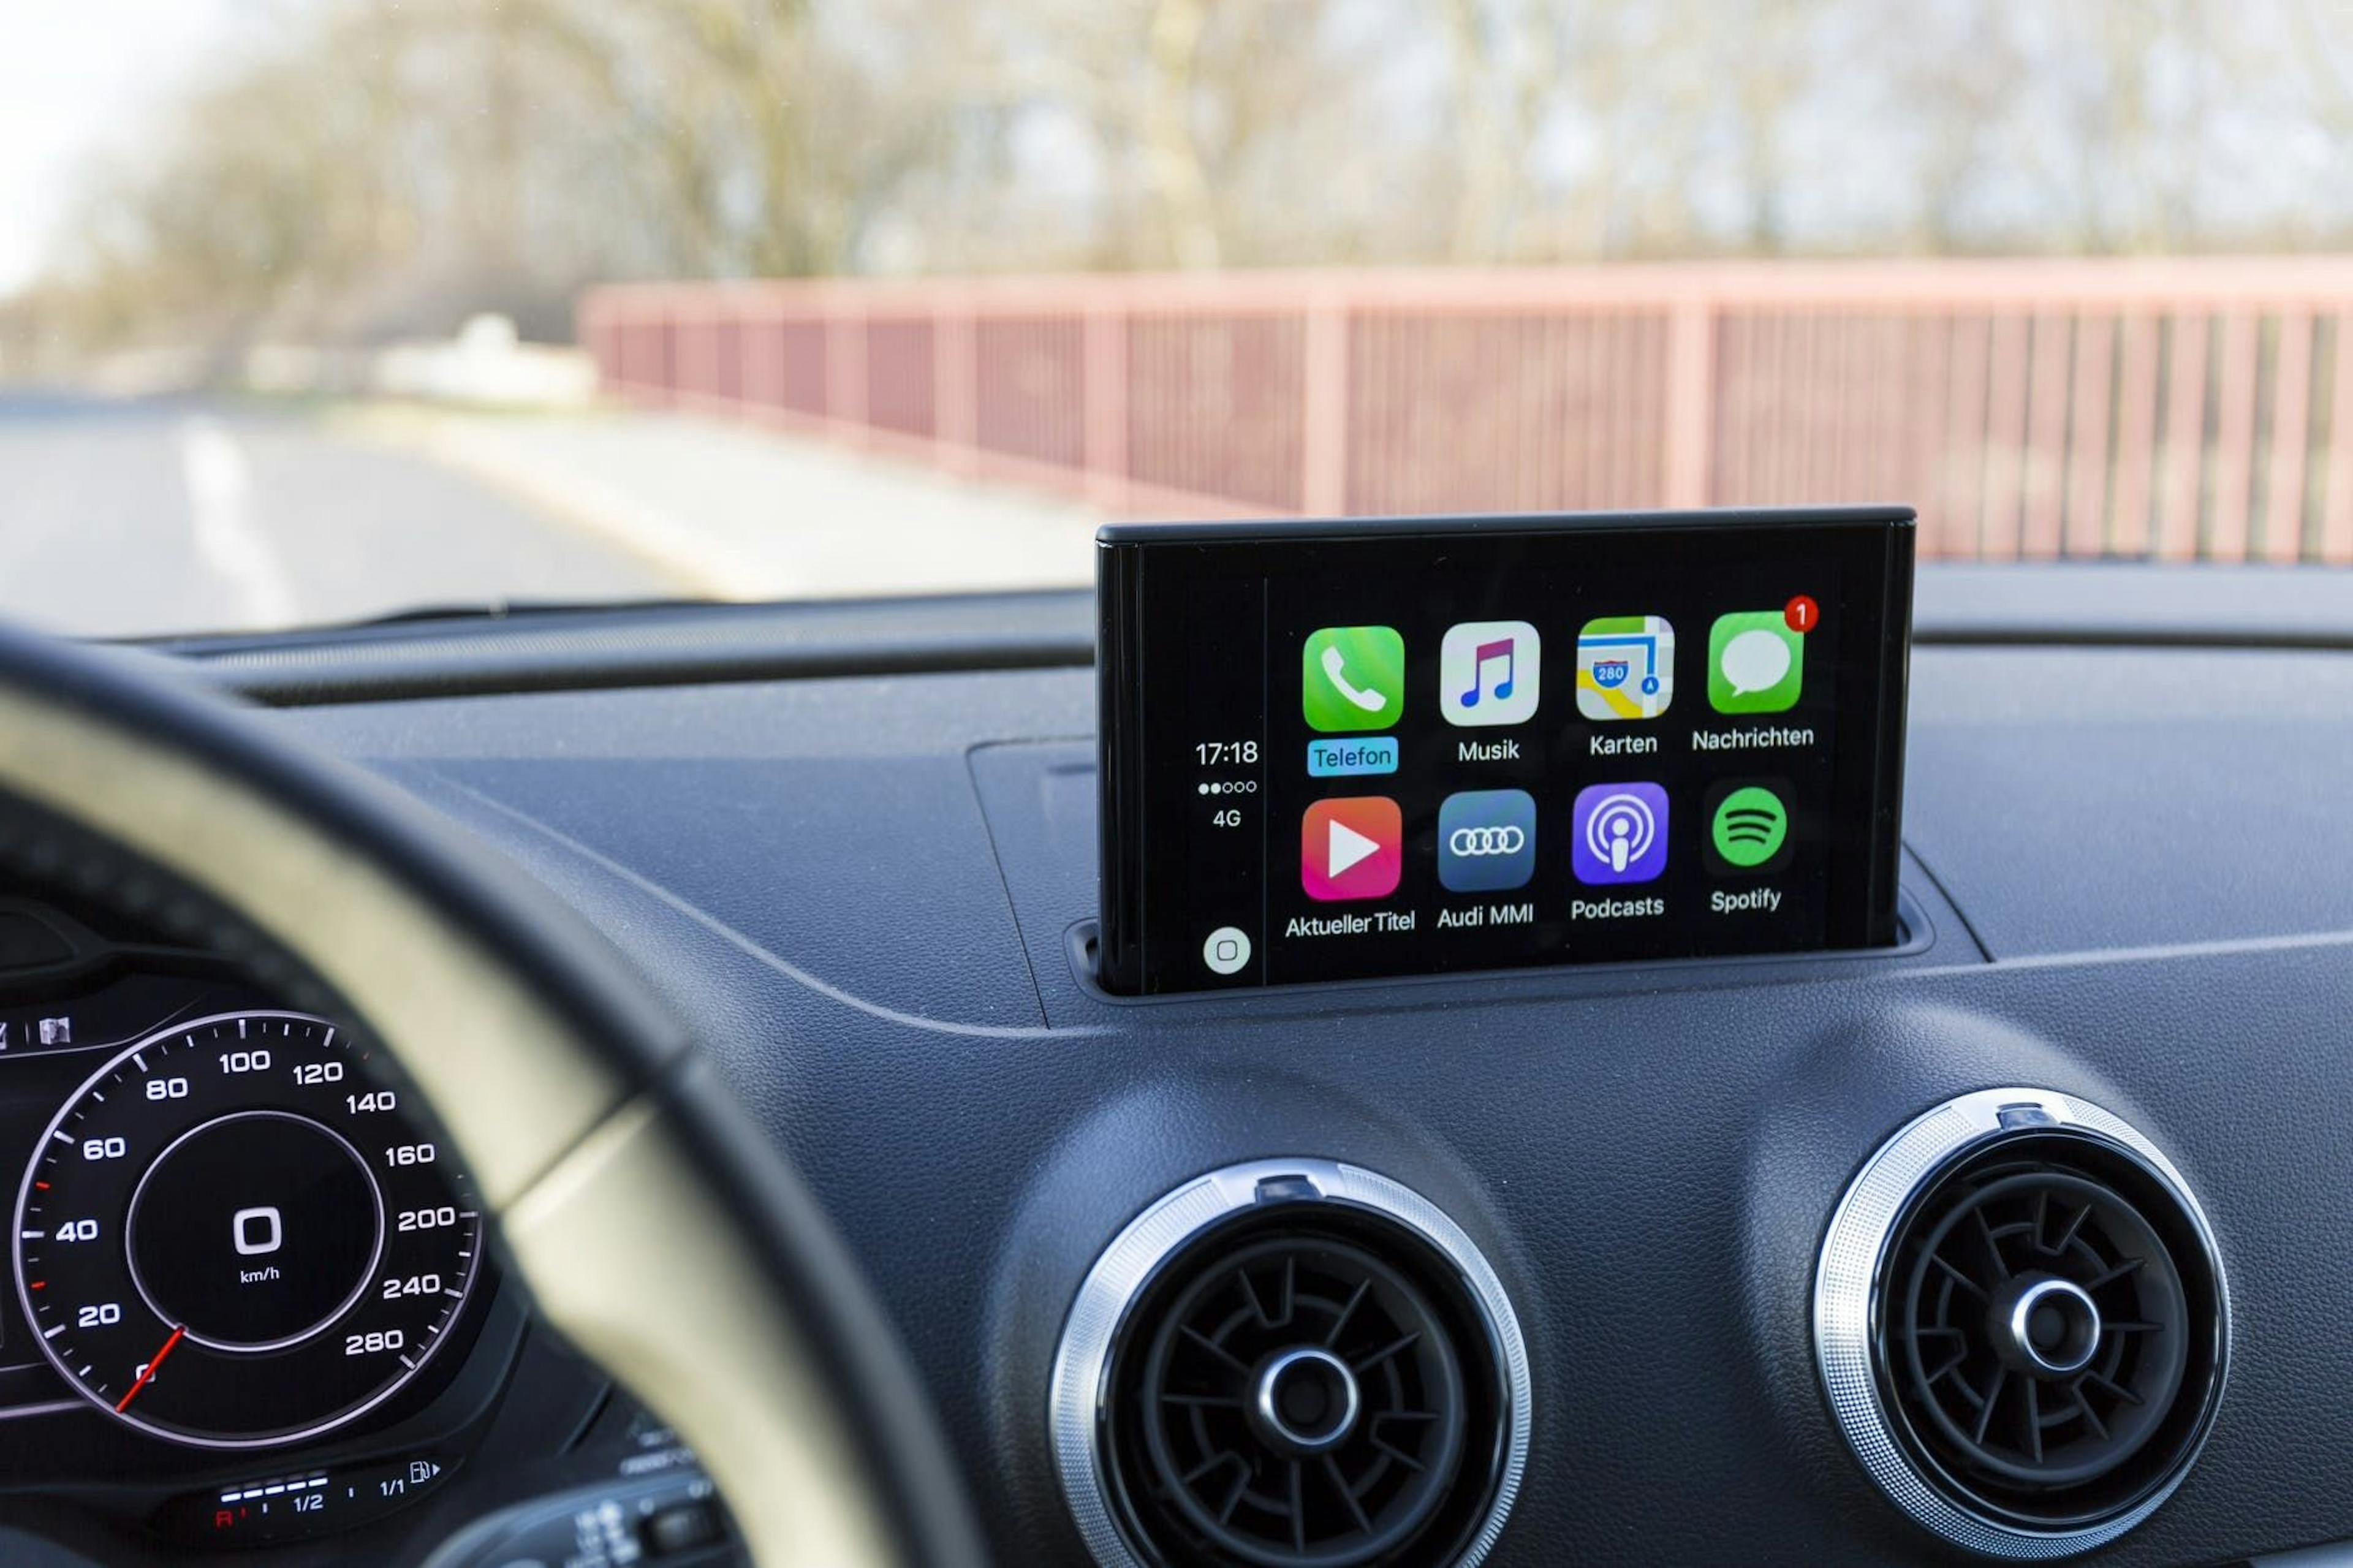 featured image - ¿Apple CarPlay no funciona? - Aquí se explica cómo solucionar problemas comunes